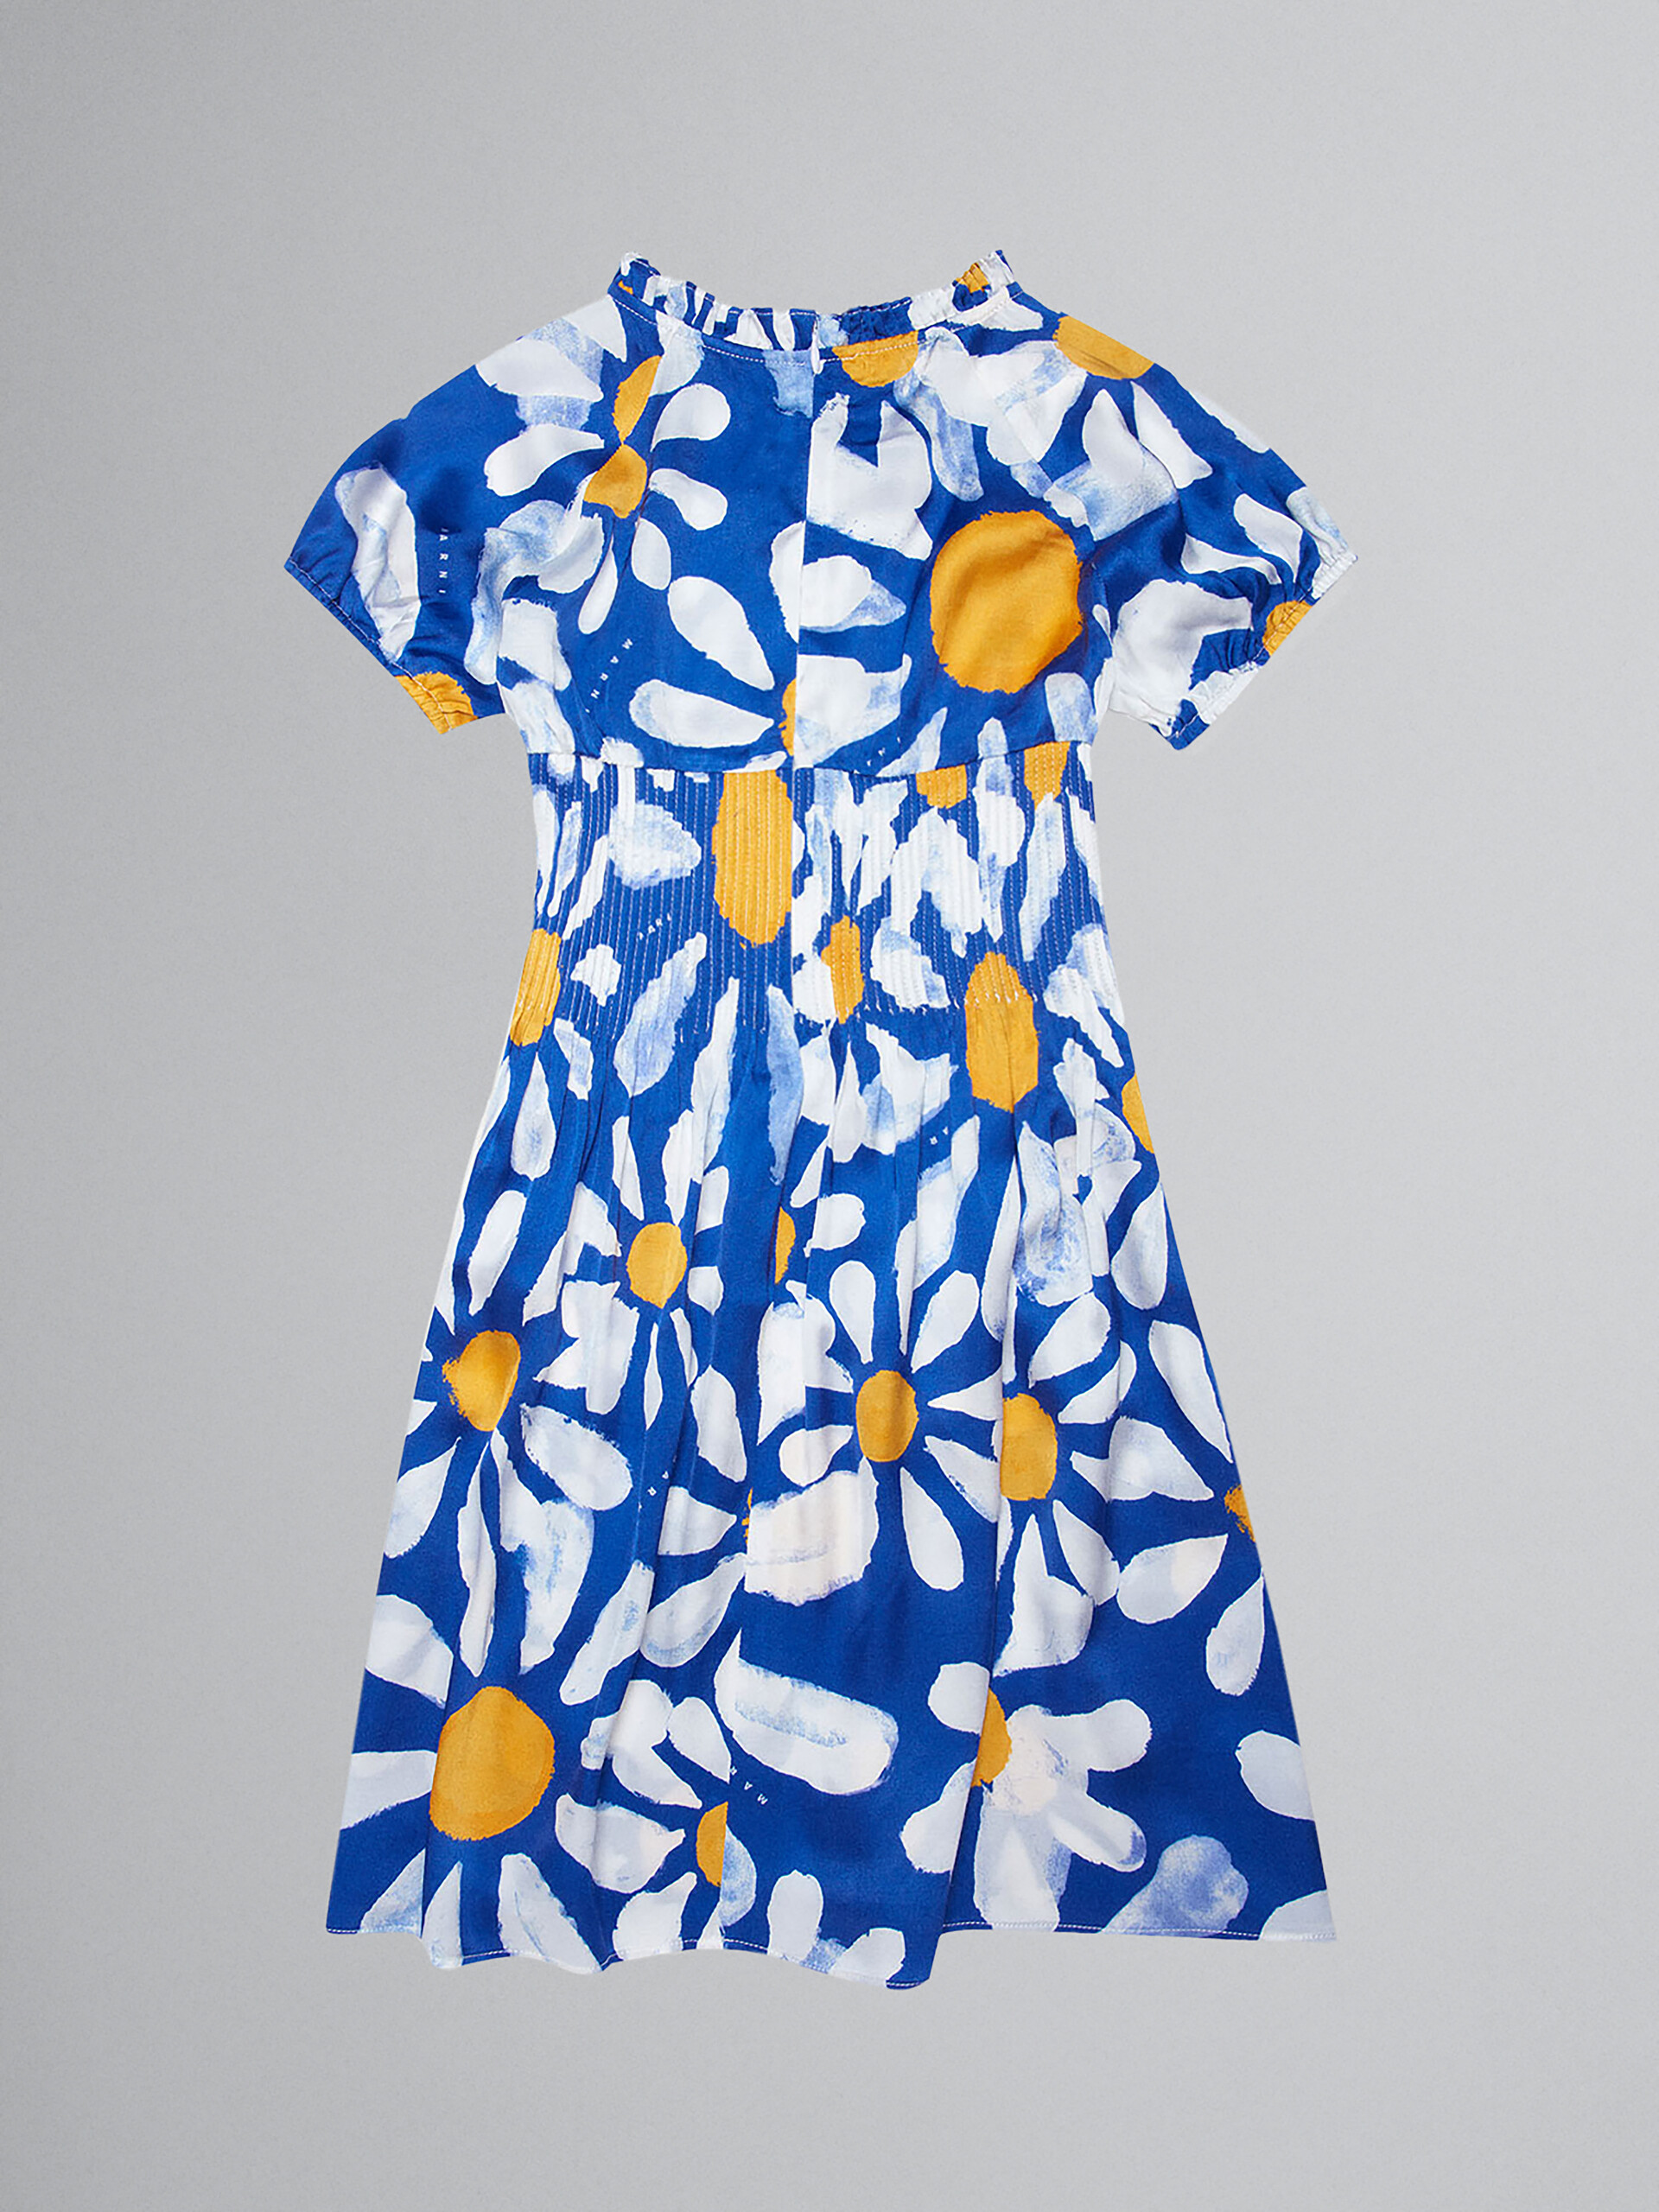 ブルー Euphoriaプリント ビスコース製ドレス - ドレス - Image 2